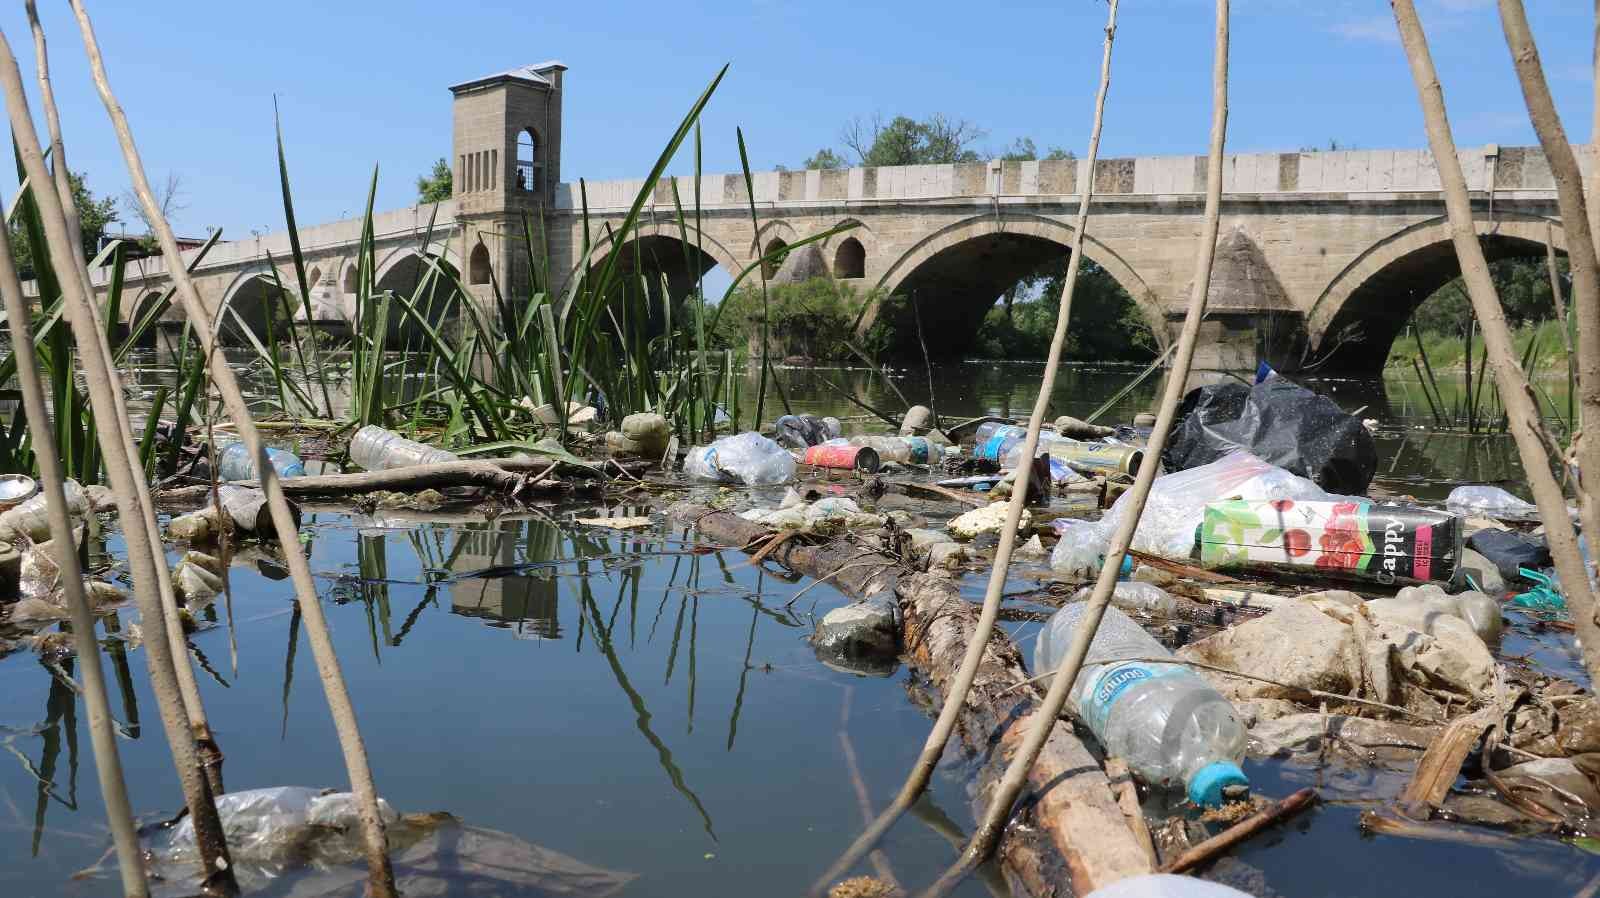 EDİRNE (İHA) – Edirne’de binlerce tarım arazisinin sulama ihtiyacını karşılayan Tunca Nehrinin su seviyesi düştü, çöpler ortaya çıktı. Bölge ...